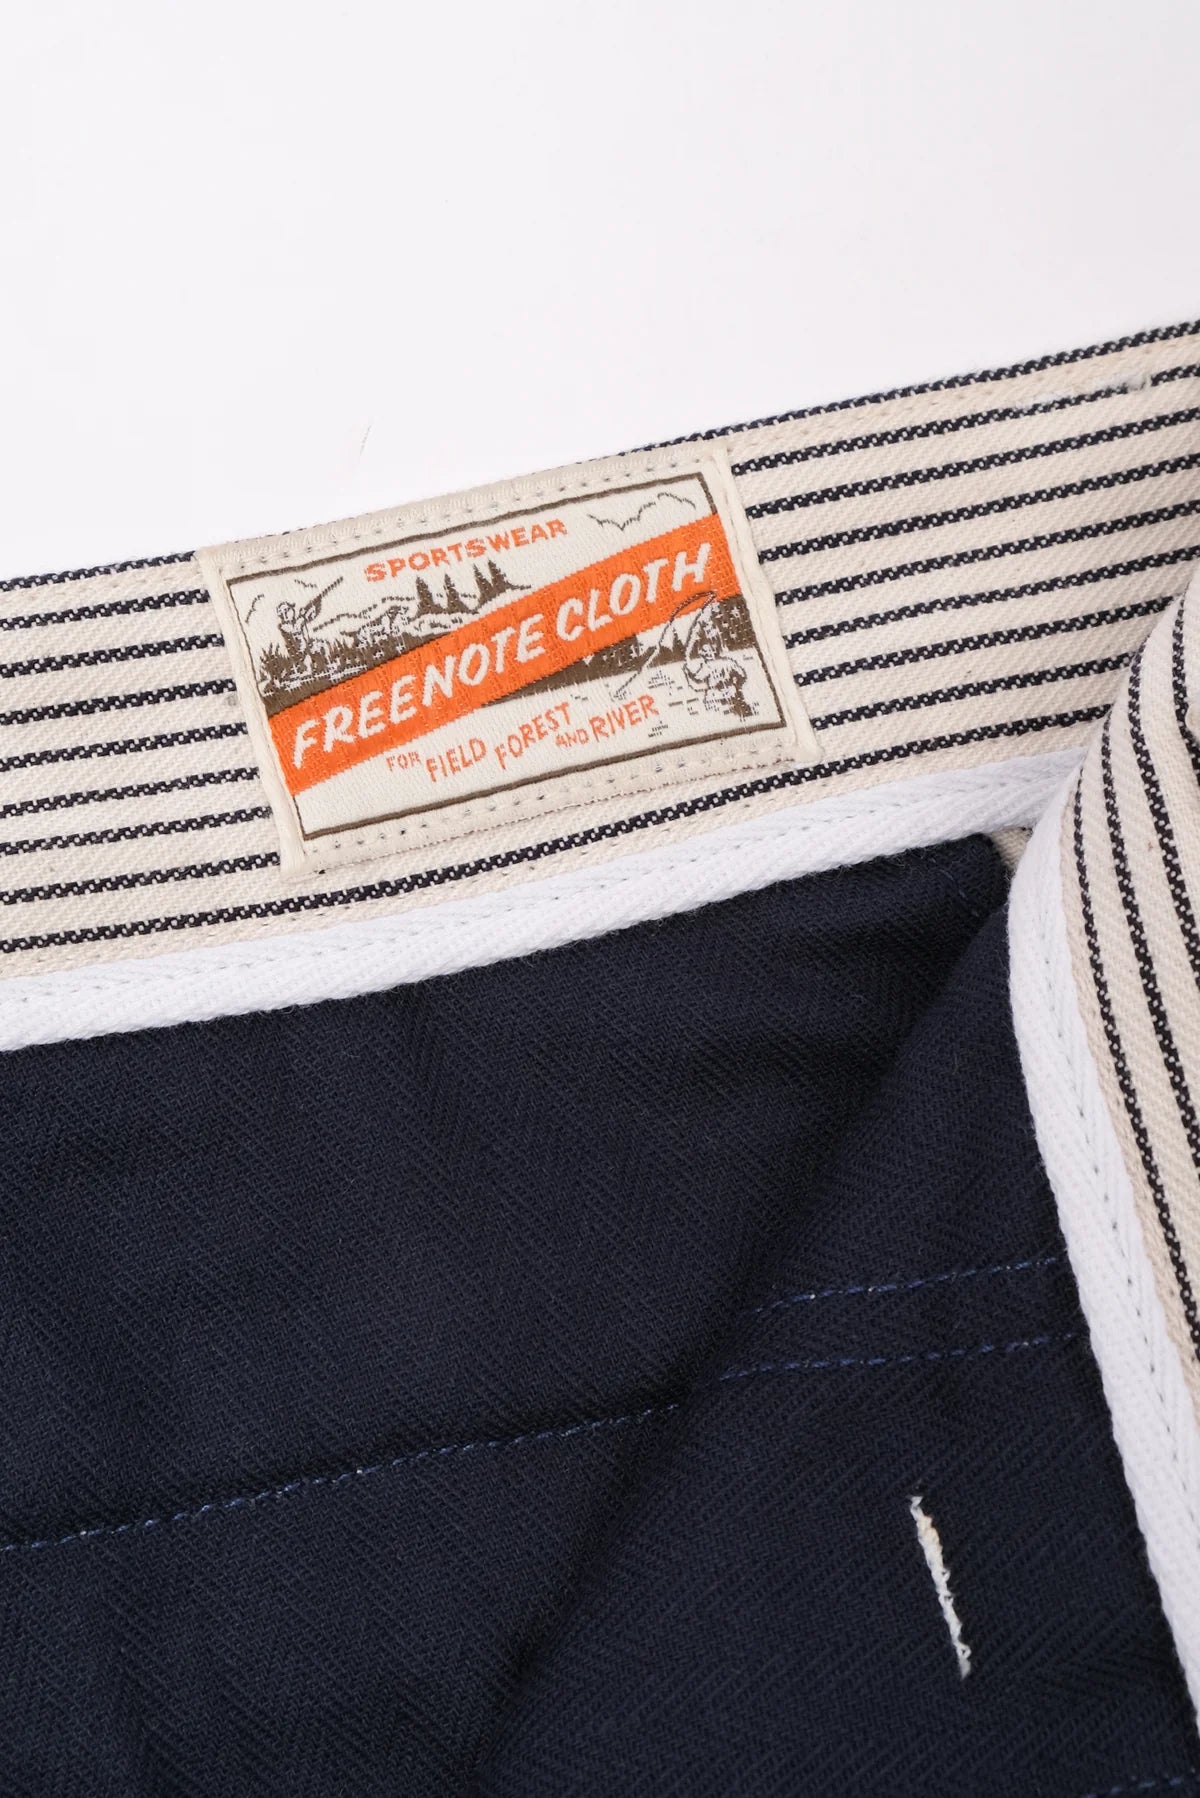 Freenote Cloth Deck Pant - Stripe